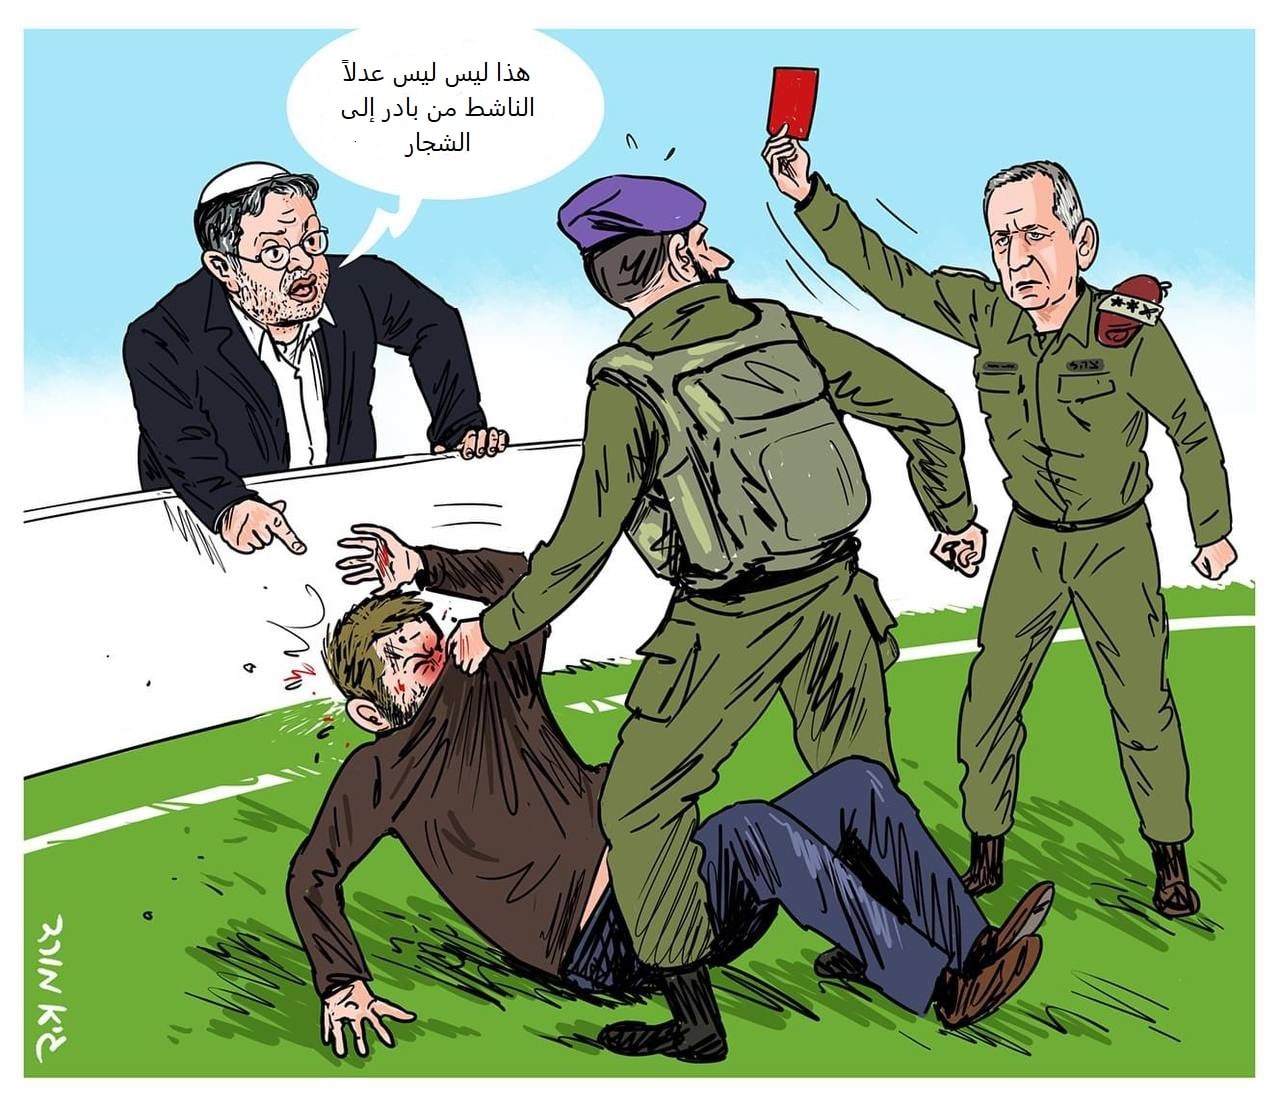 كاريكاتير "يديعوت" يسخر من ردة فعل أفيف كوخافي على تنكيل أحد جنوده بناشط يساري إسرائيلي في الخليل، بينما يظهر ايتمار بن غفير محرضًا